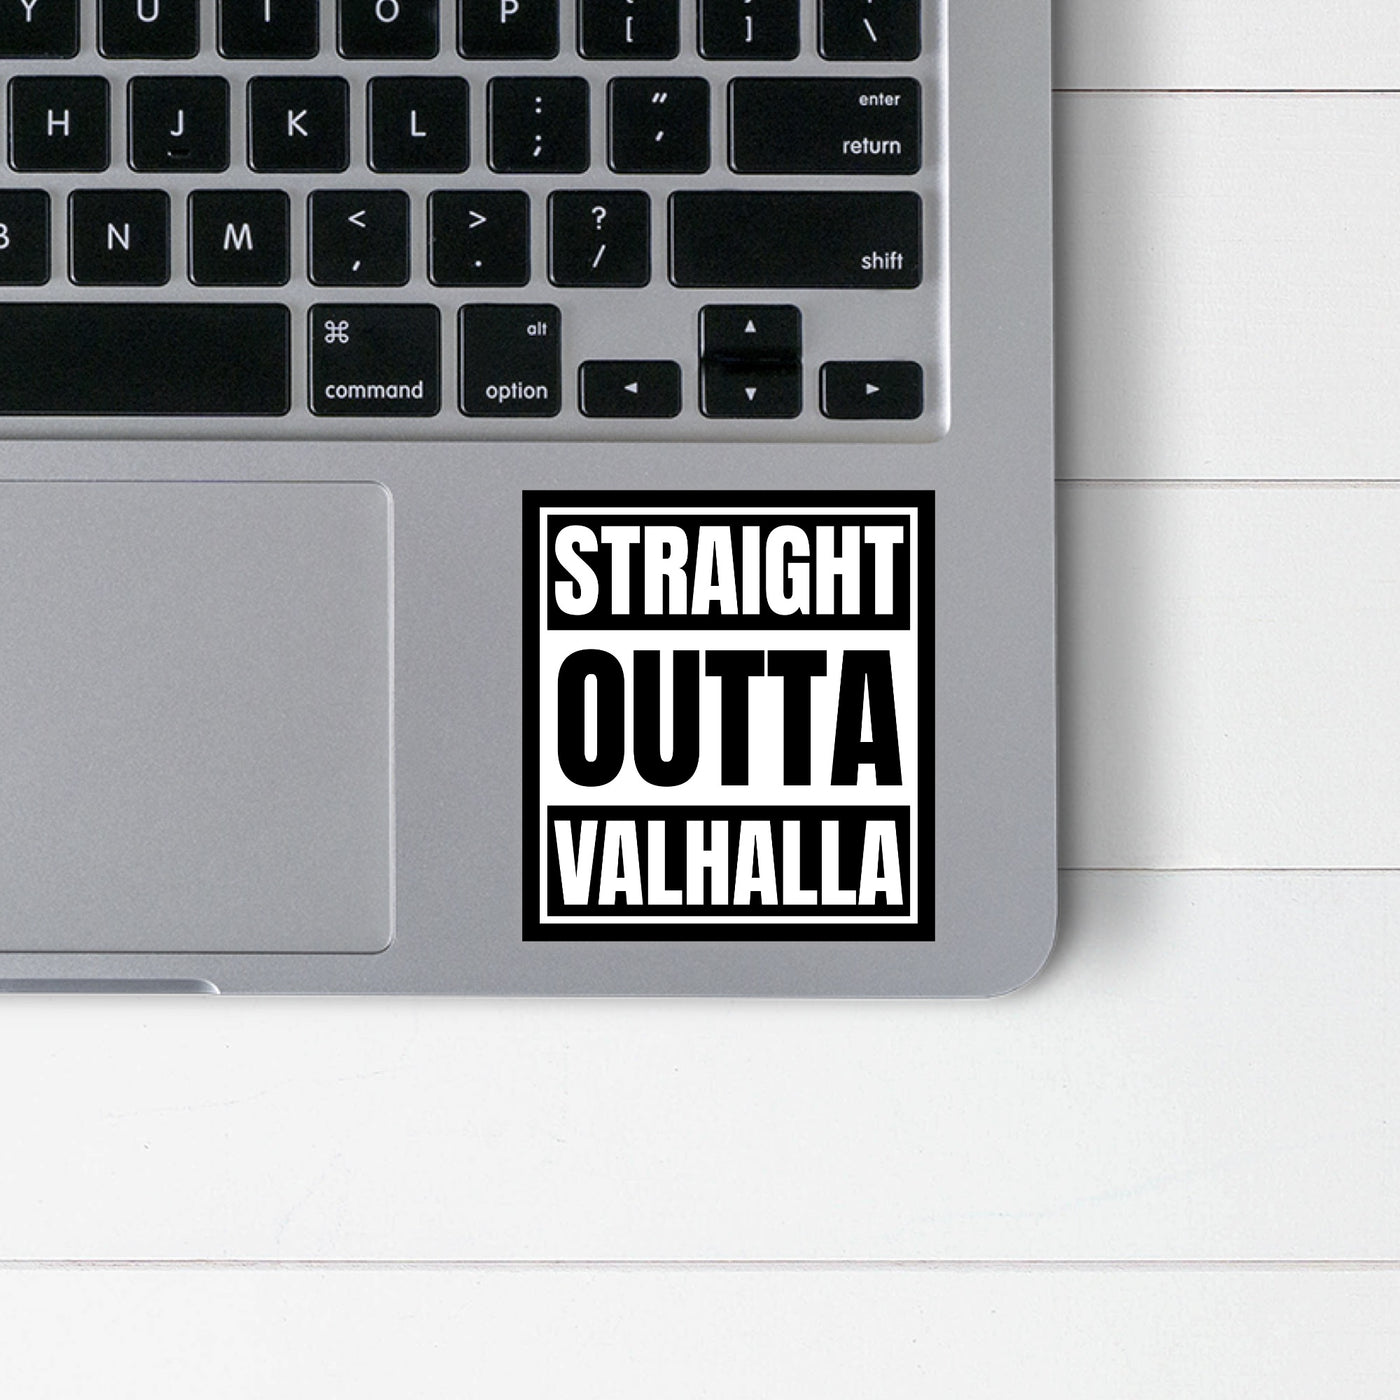 Straight Outta Valhalla Sticker